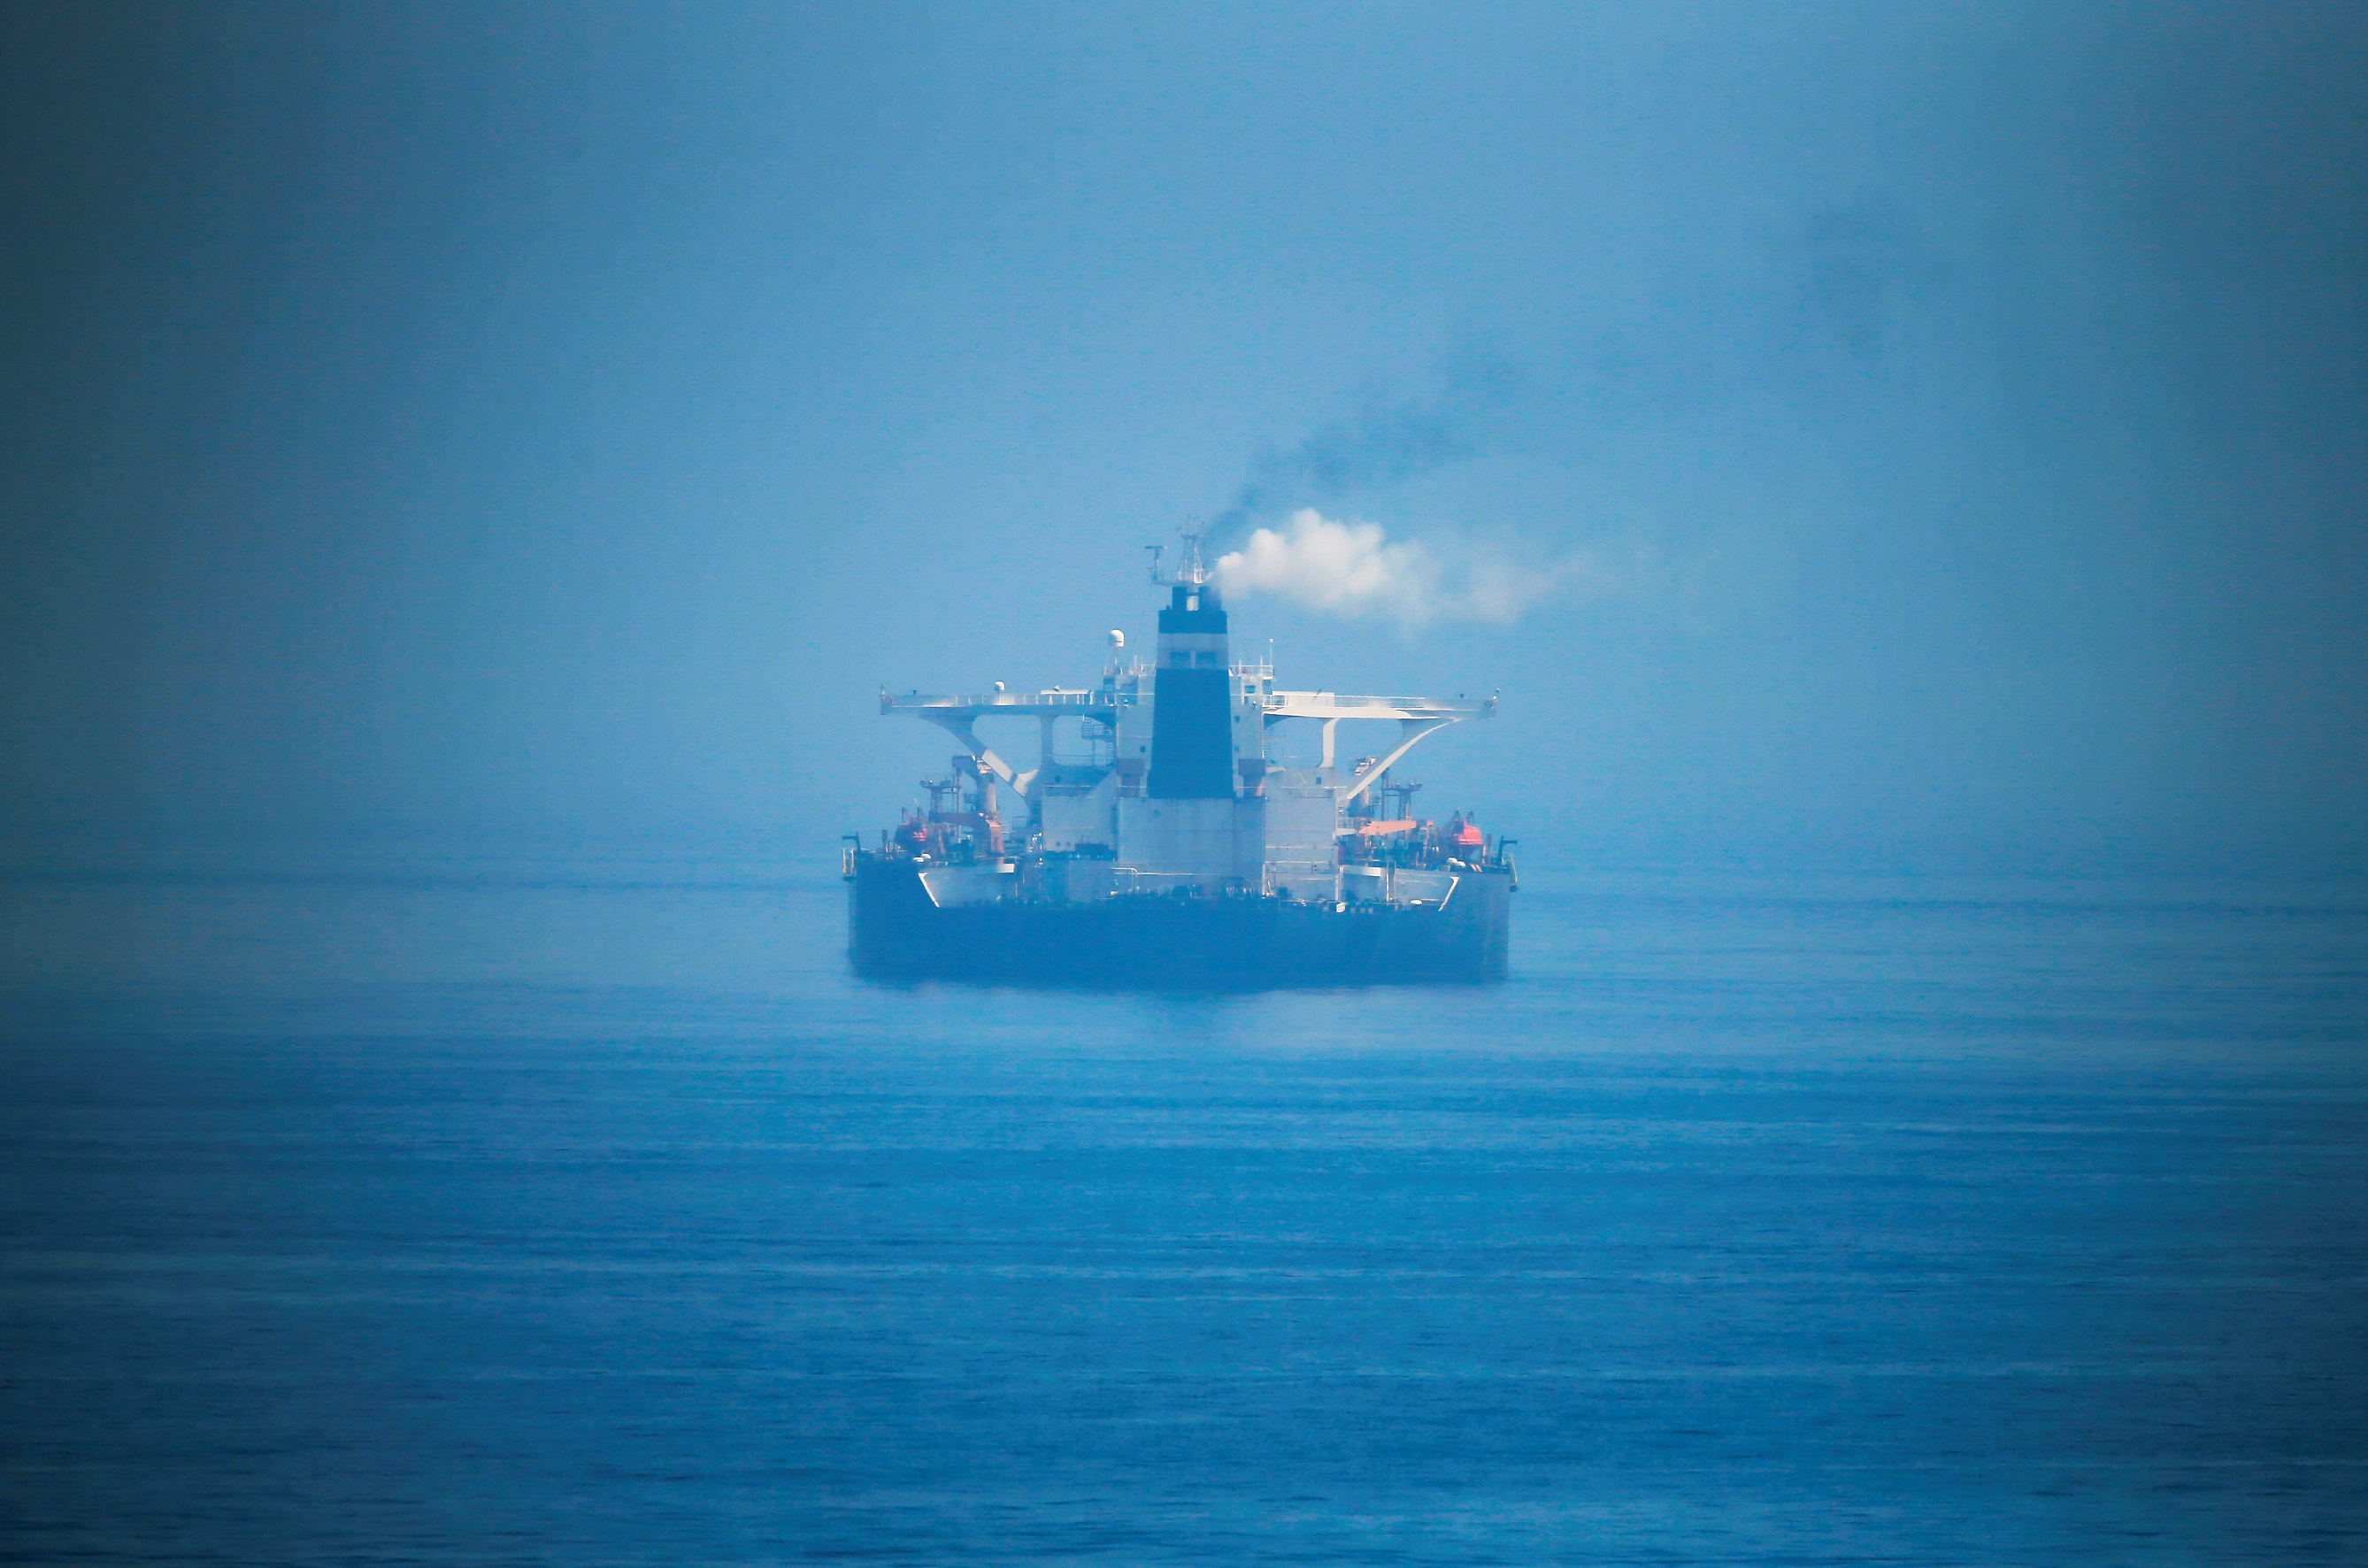 ناقلة النفط الإيرانية "غريس 1" أثناء رسوها في البحر بعد سماح سلطات جبل طارق للسفينة المحتجزة بالإبحار، 16 آب/أغسطس 2019. (رويترز)